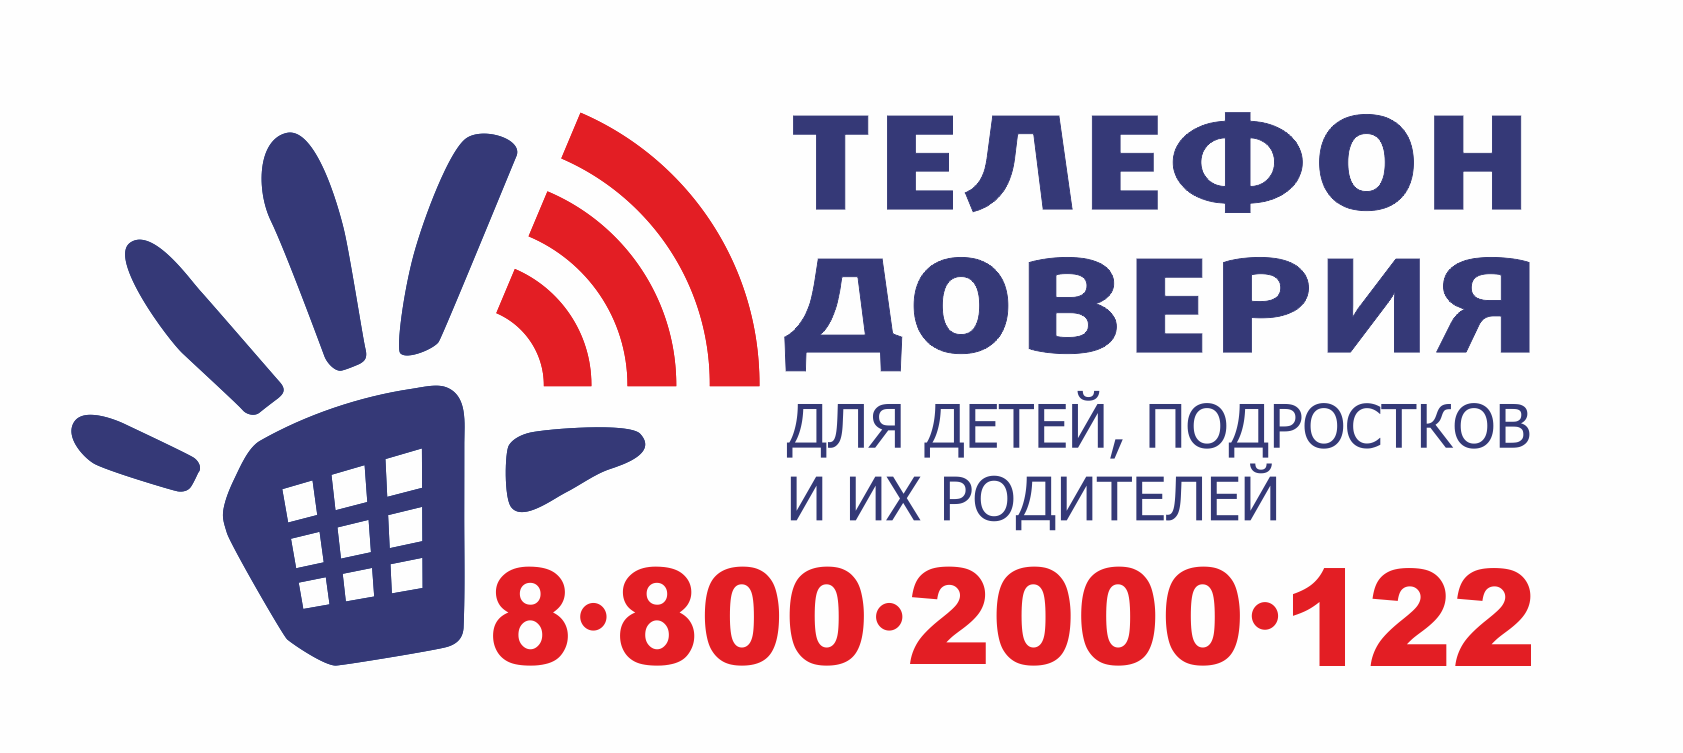 Телефоны доверия - МАОУ «Средняя общеобразовательная школа № 3»